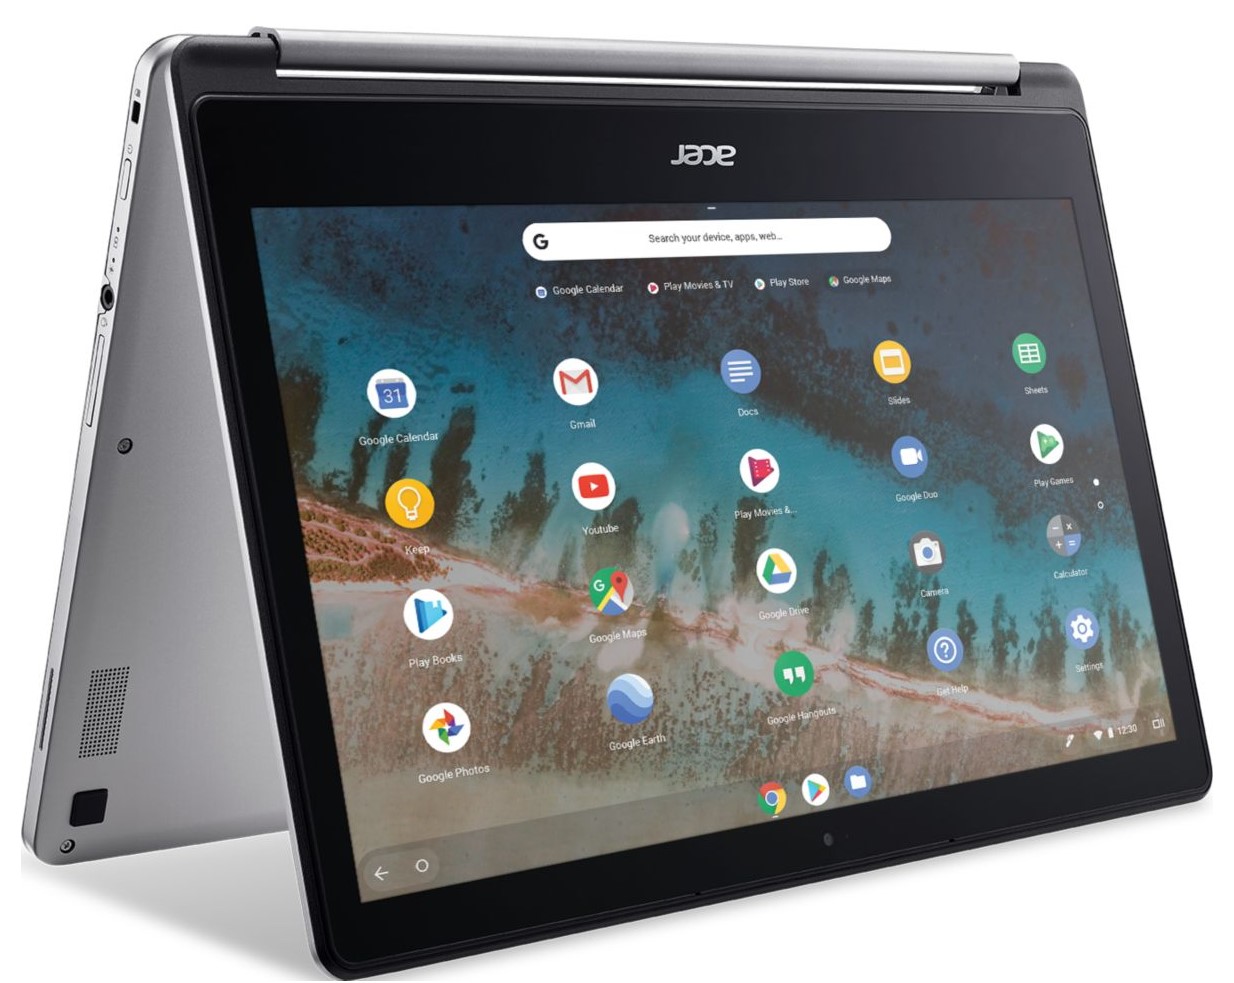 Chromebook Acer R13 CB5-312T-K2L7